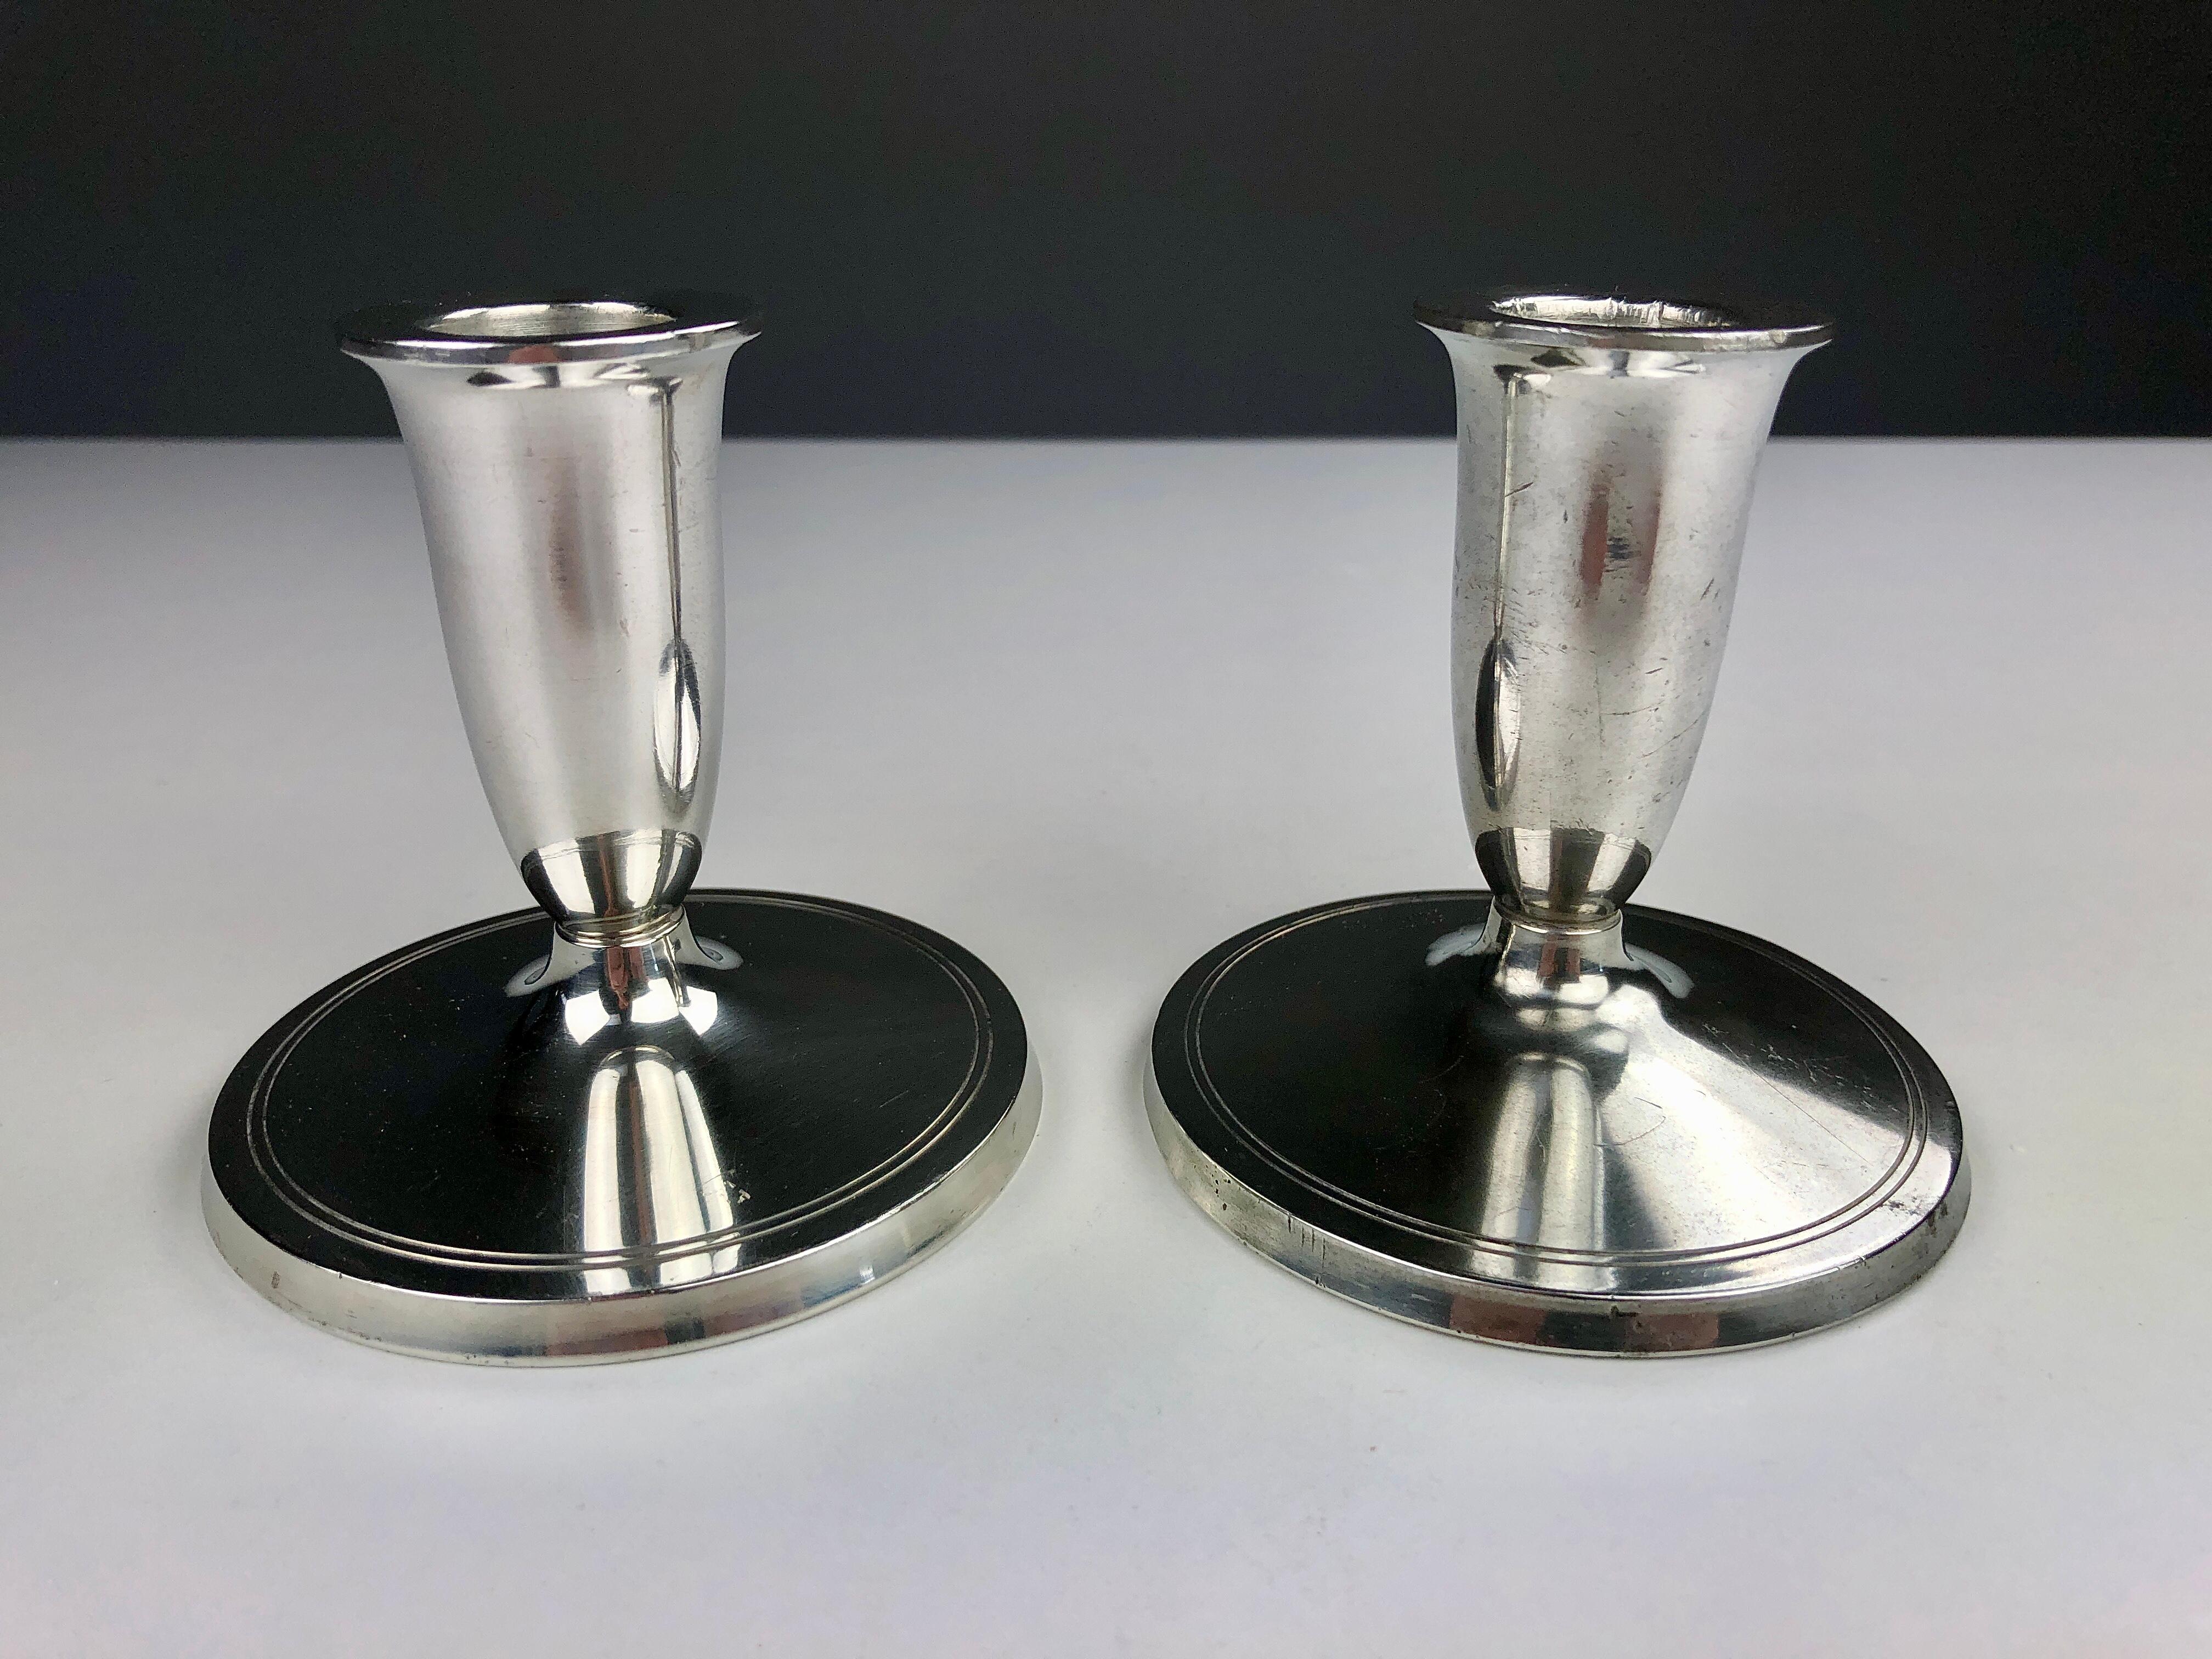 Satz von zwei dänischen Just Andersen Art-Deco-Kerzenhaltern aus Zinn, hergestellt von Just Andersen A/S in den 1940er Jahren.

Die Kerzenhalter sind in gutem Vintage-Zustand und mit Just gekennzeichnet. Andersens Dreiecksmarke. 

Just Andersen